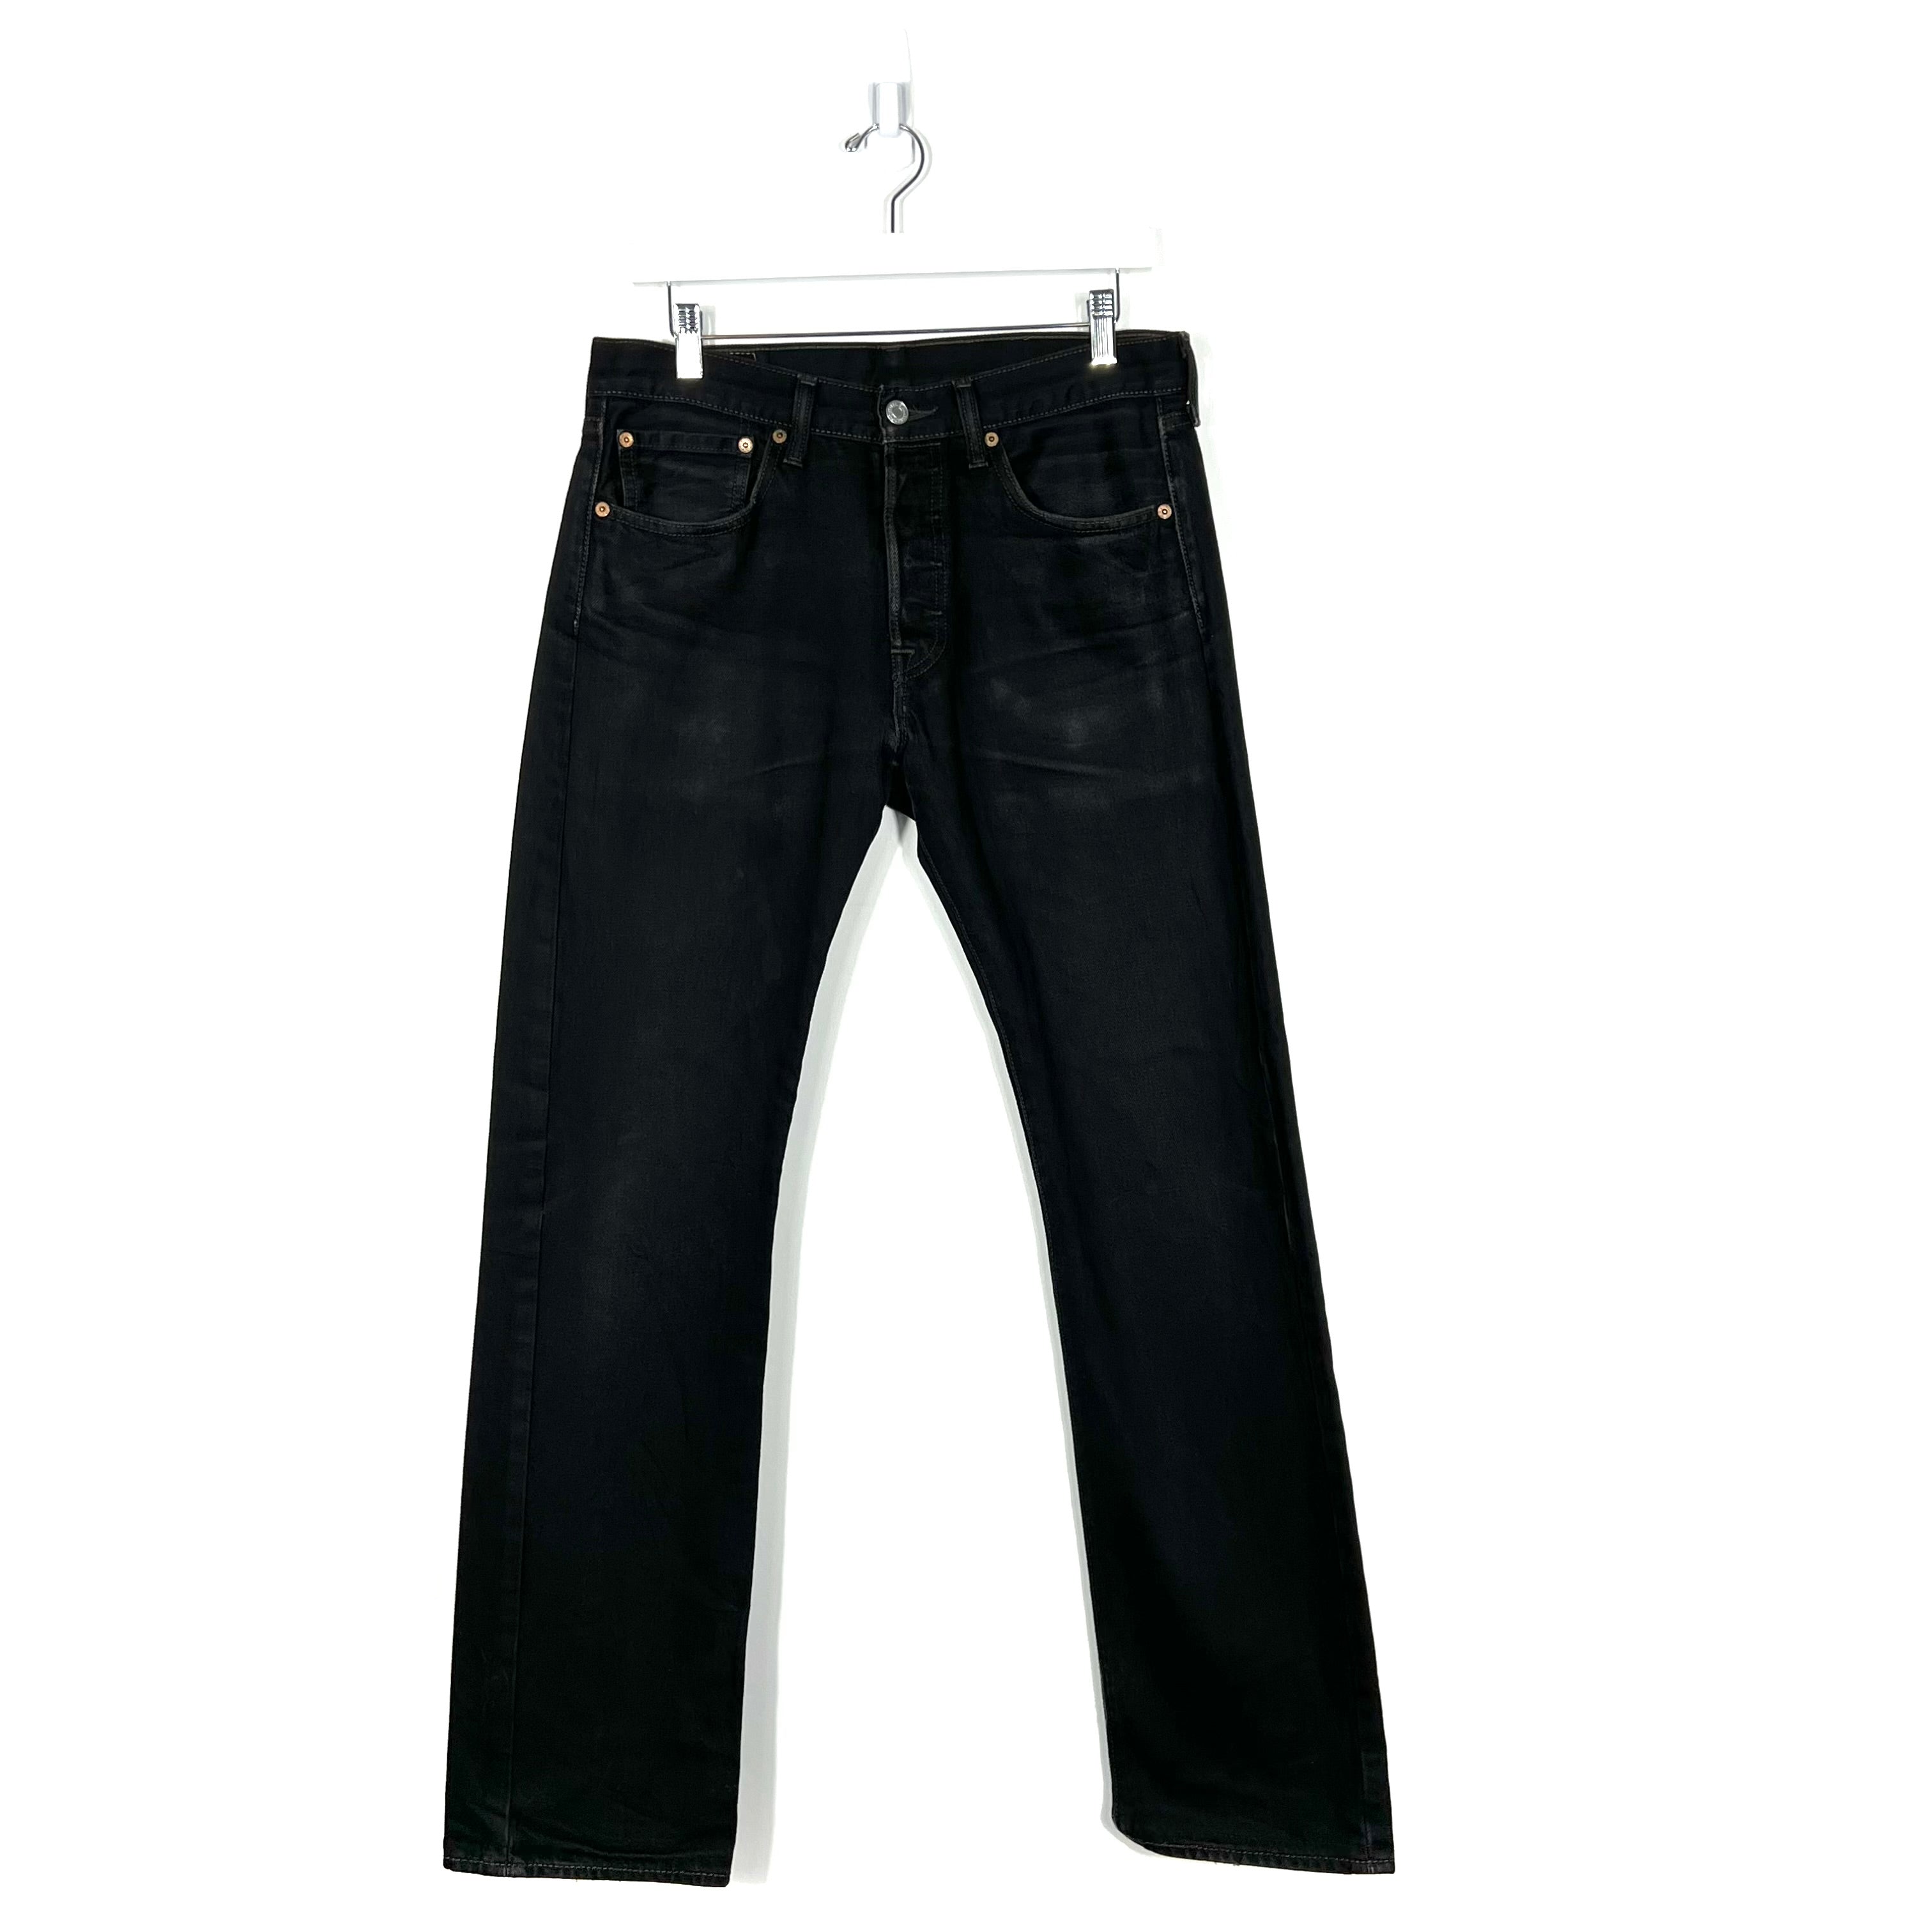 Vintage Levis 501 Jeans - Men's 31/32